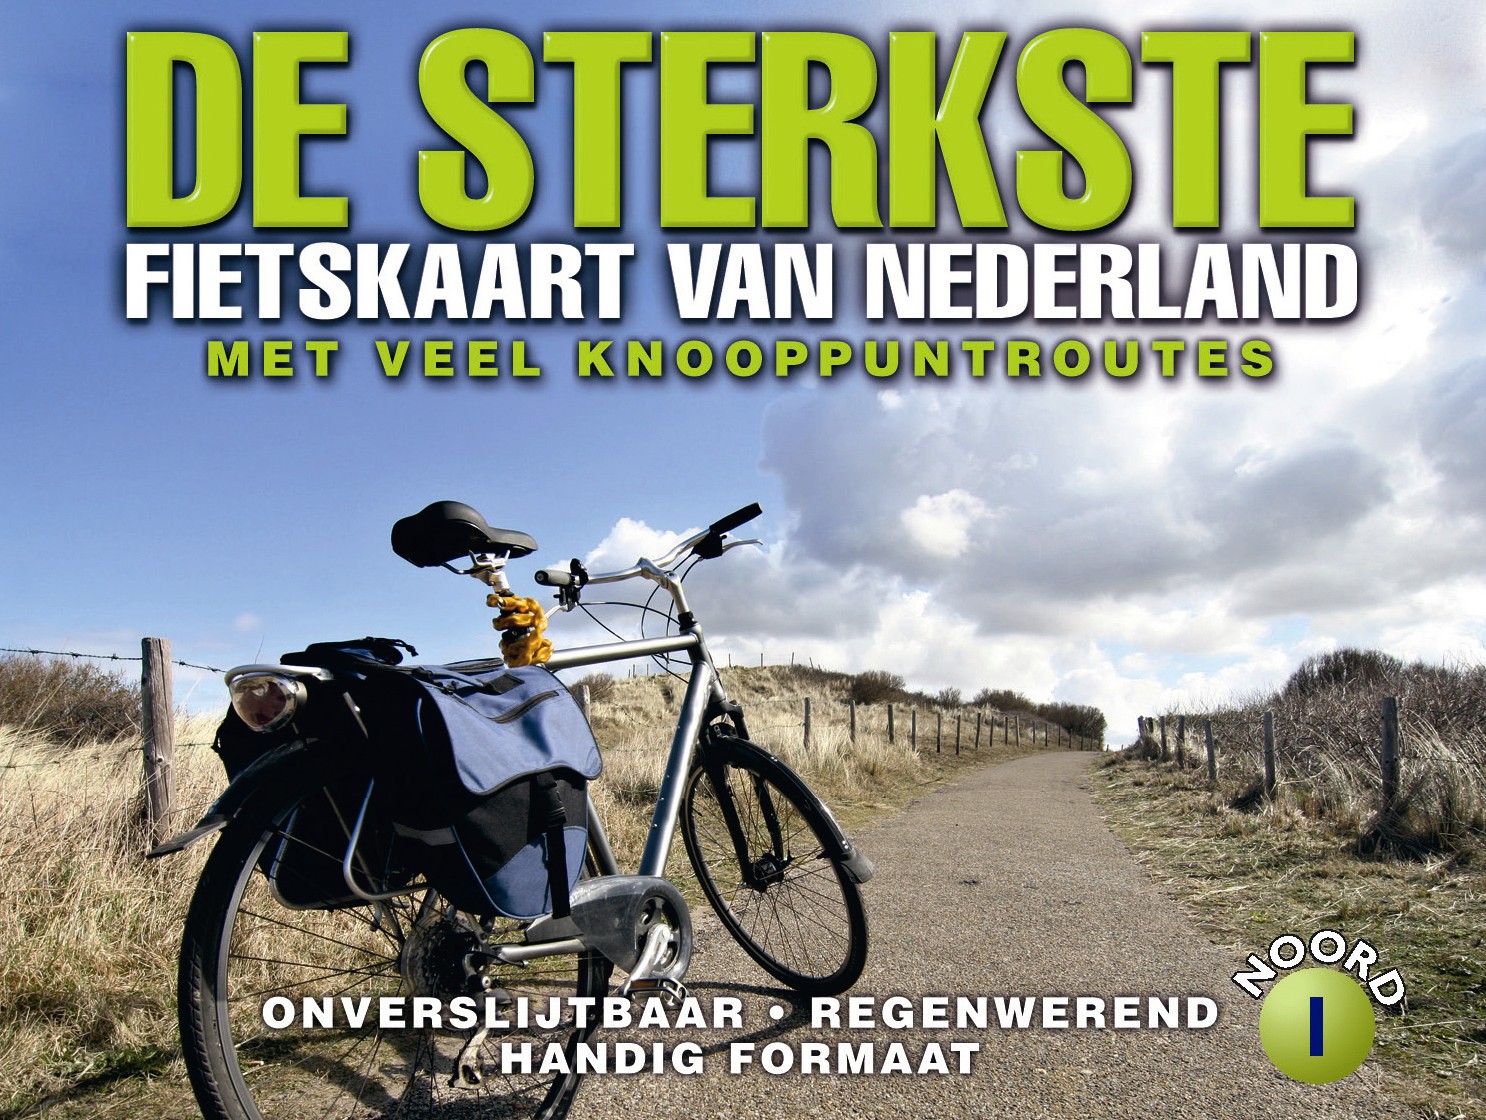 Nederland 1 Noord / Midden sterkste fietskaart r/v (r) wp - 1/200